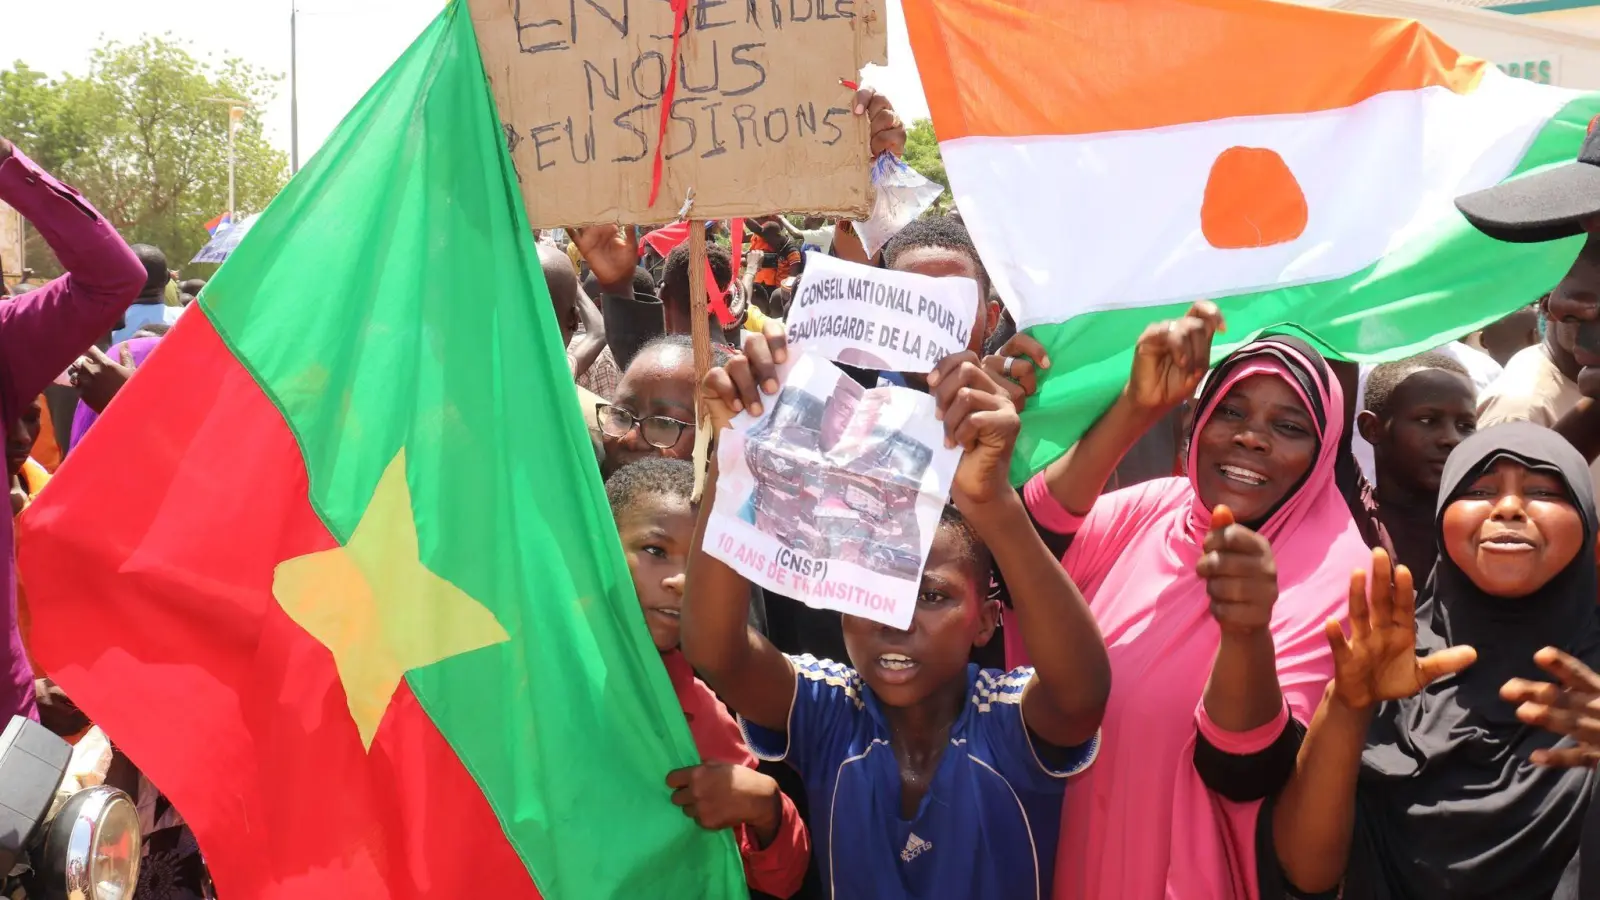 Befürworter des Putschs halten eine Flagge von Burkina Faso (l) und Niger hoch. Die beiden Länder haben einen Pakt geschlossen. (Foto: Djibo Issifou/dpa)